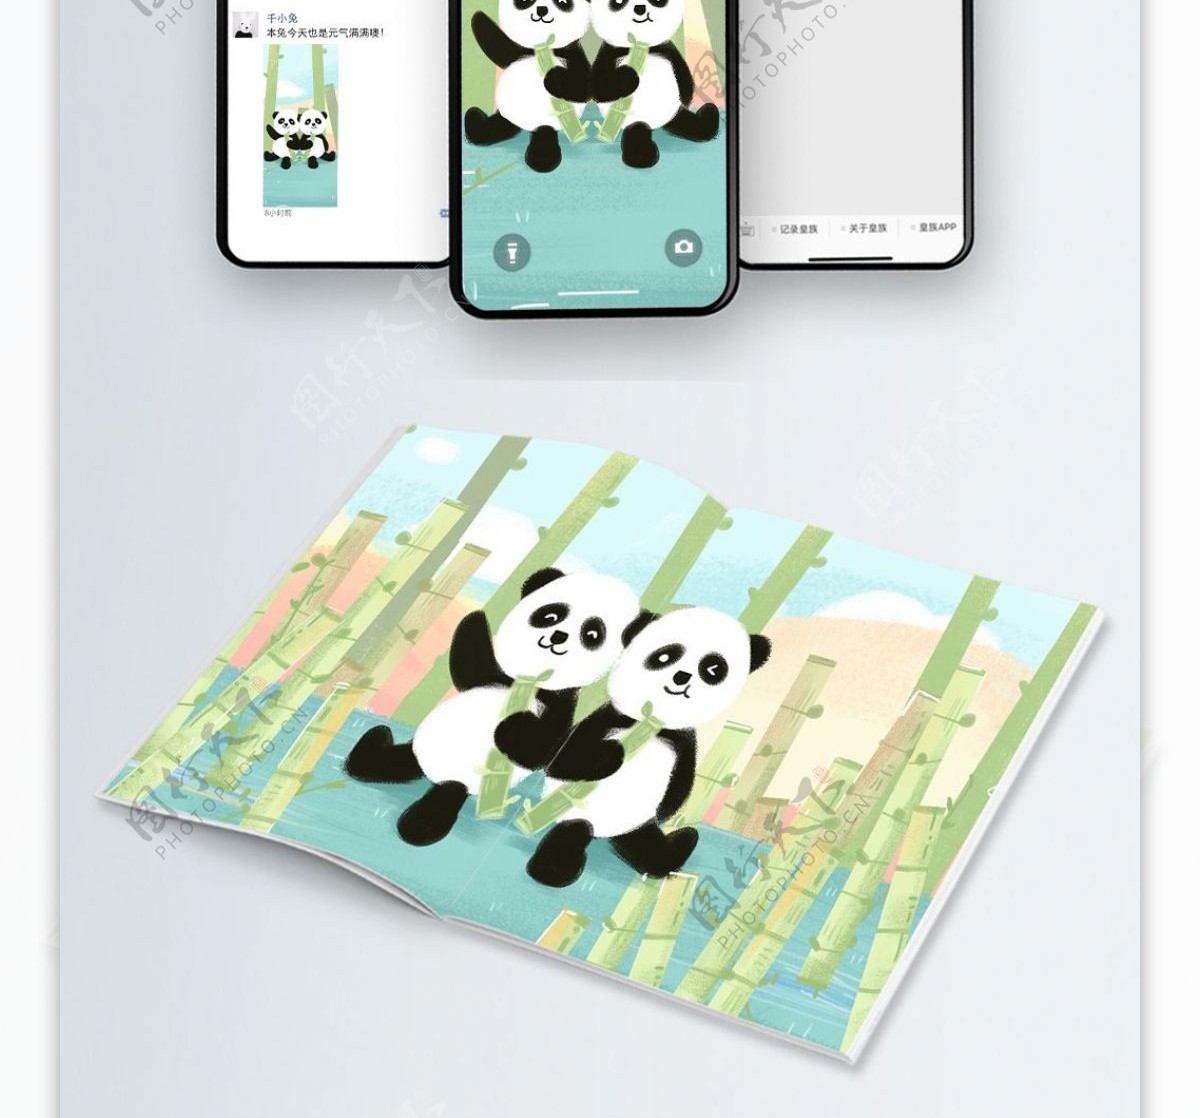 熊猫日常竹子林手绘插画背景海报壁纸H5页